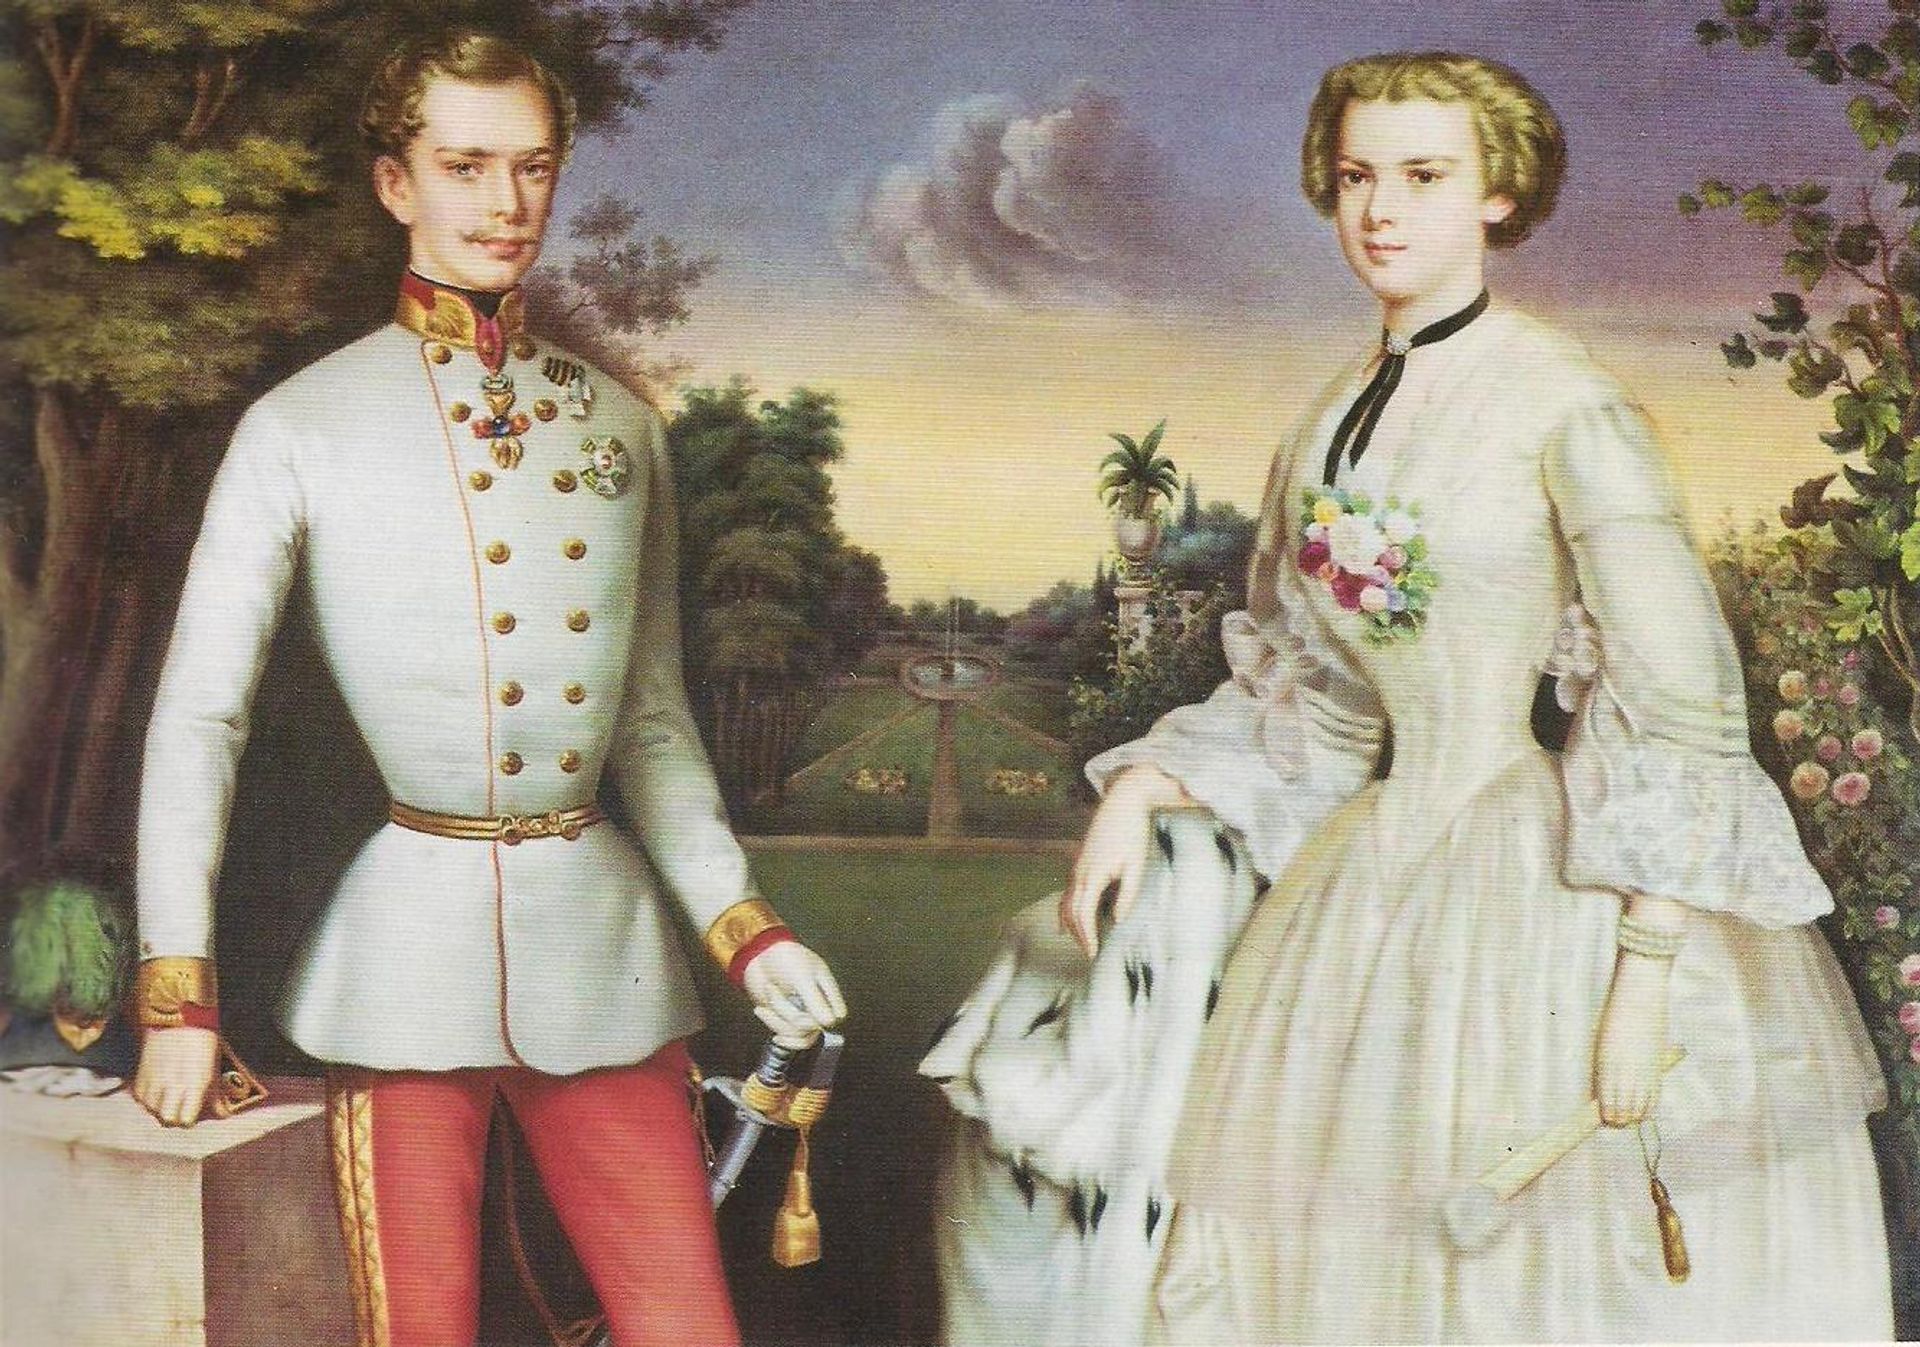 Frans Jozef met zijn jonge verloofde in 1854.